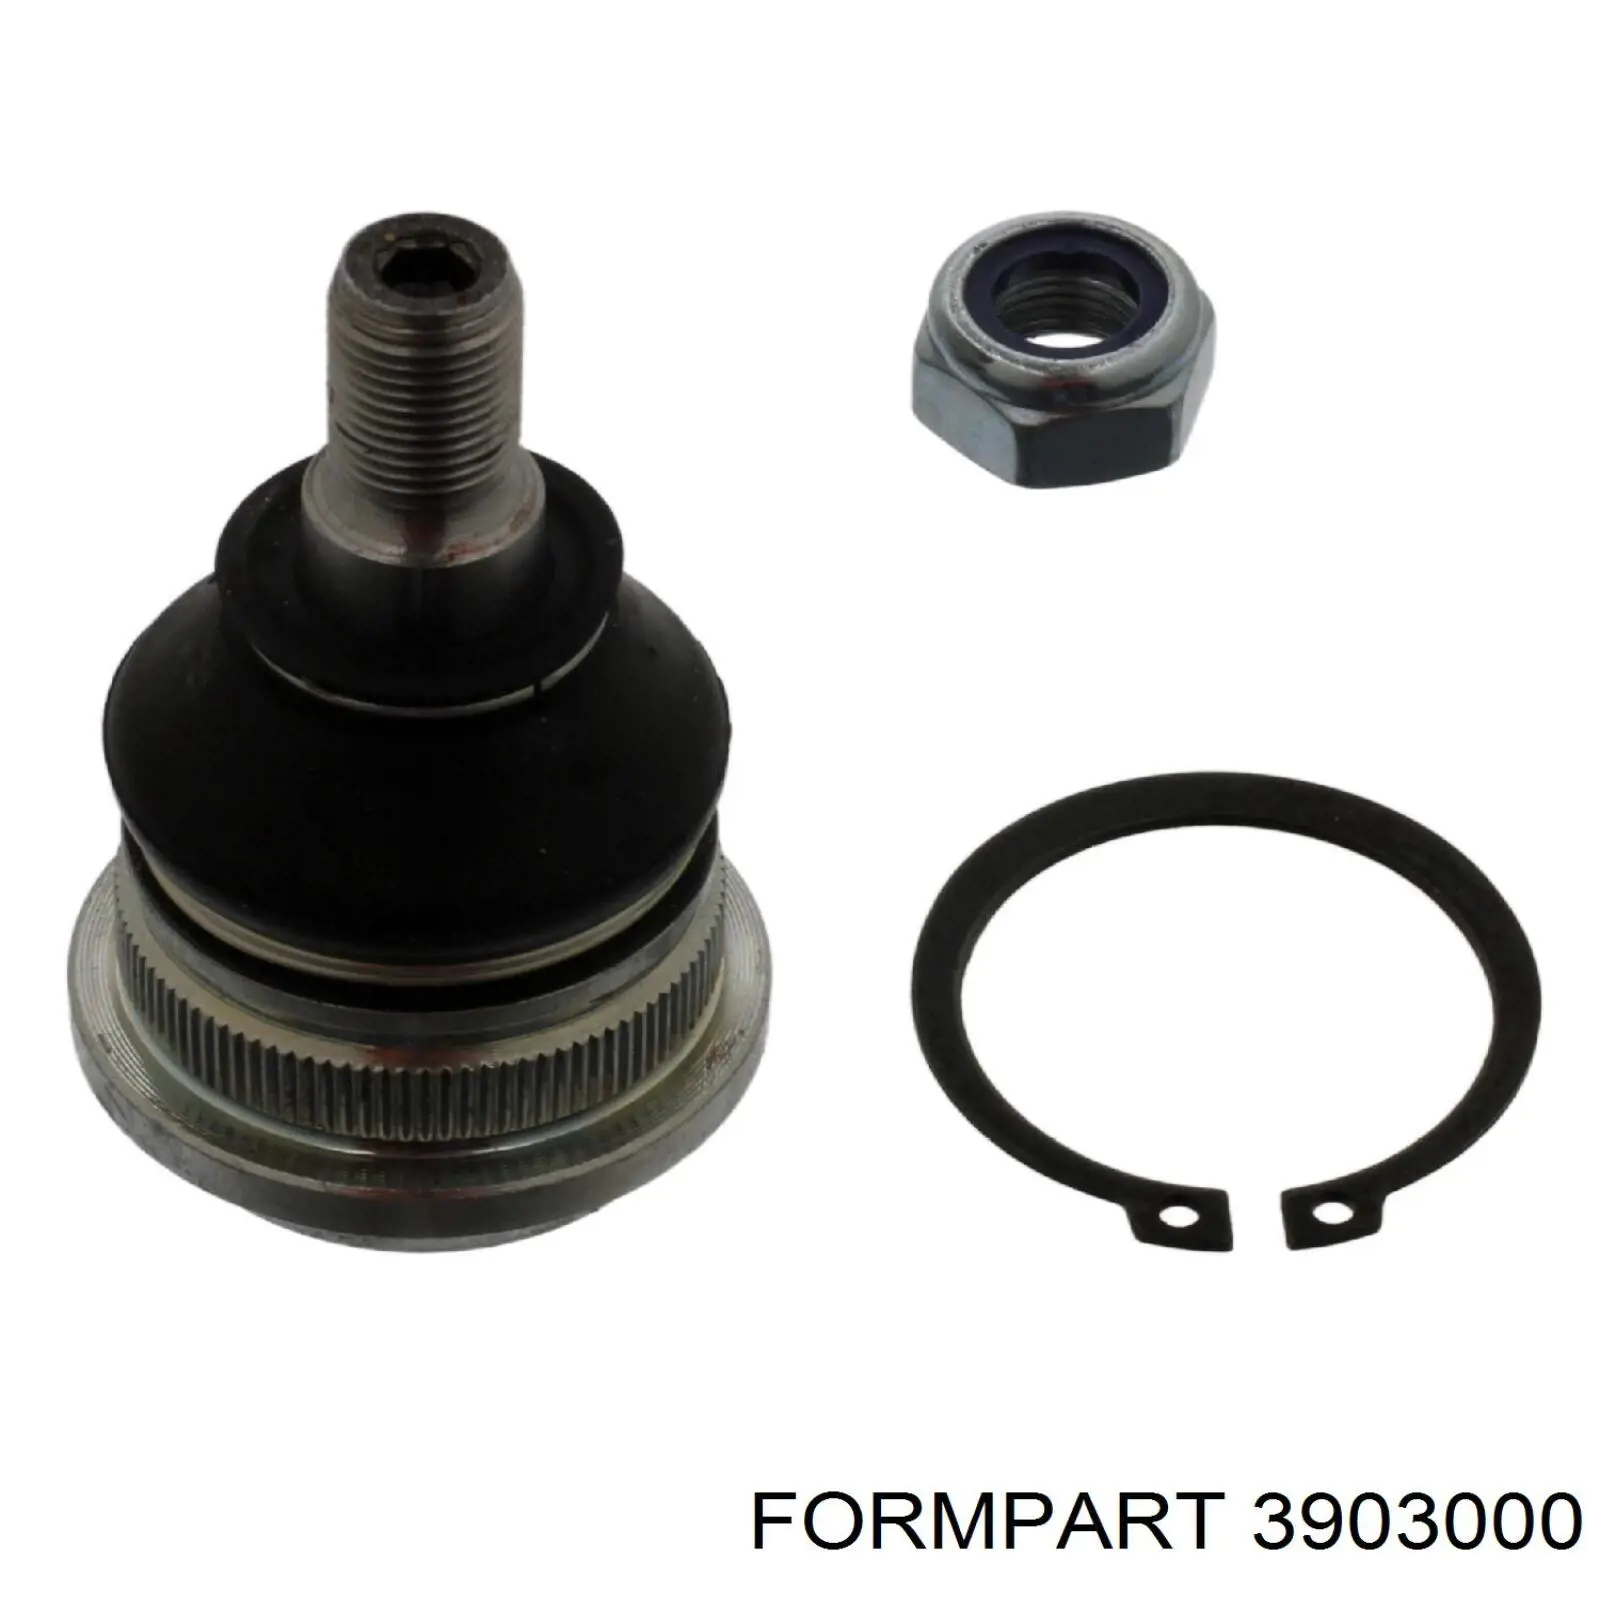 3903000 Formpart/Otoform